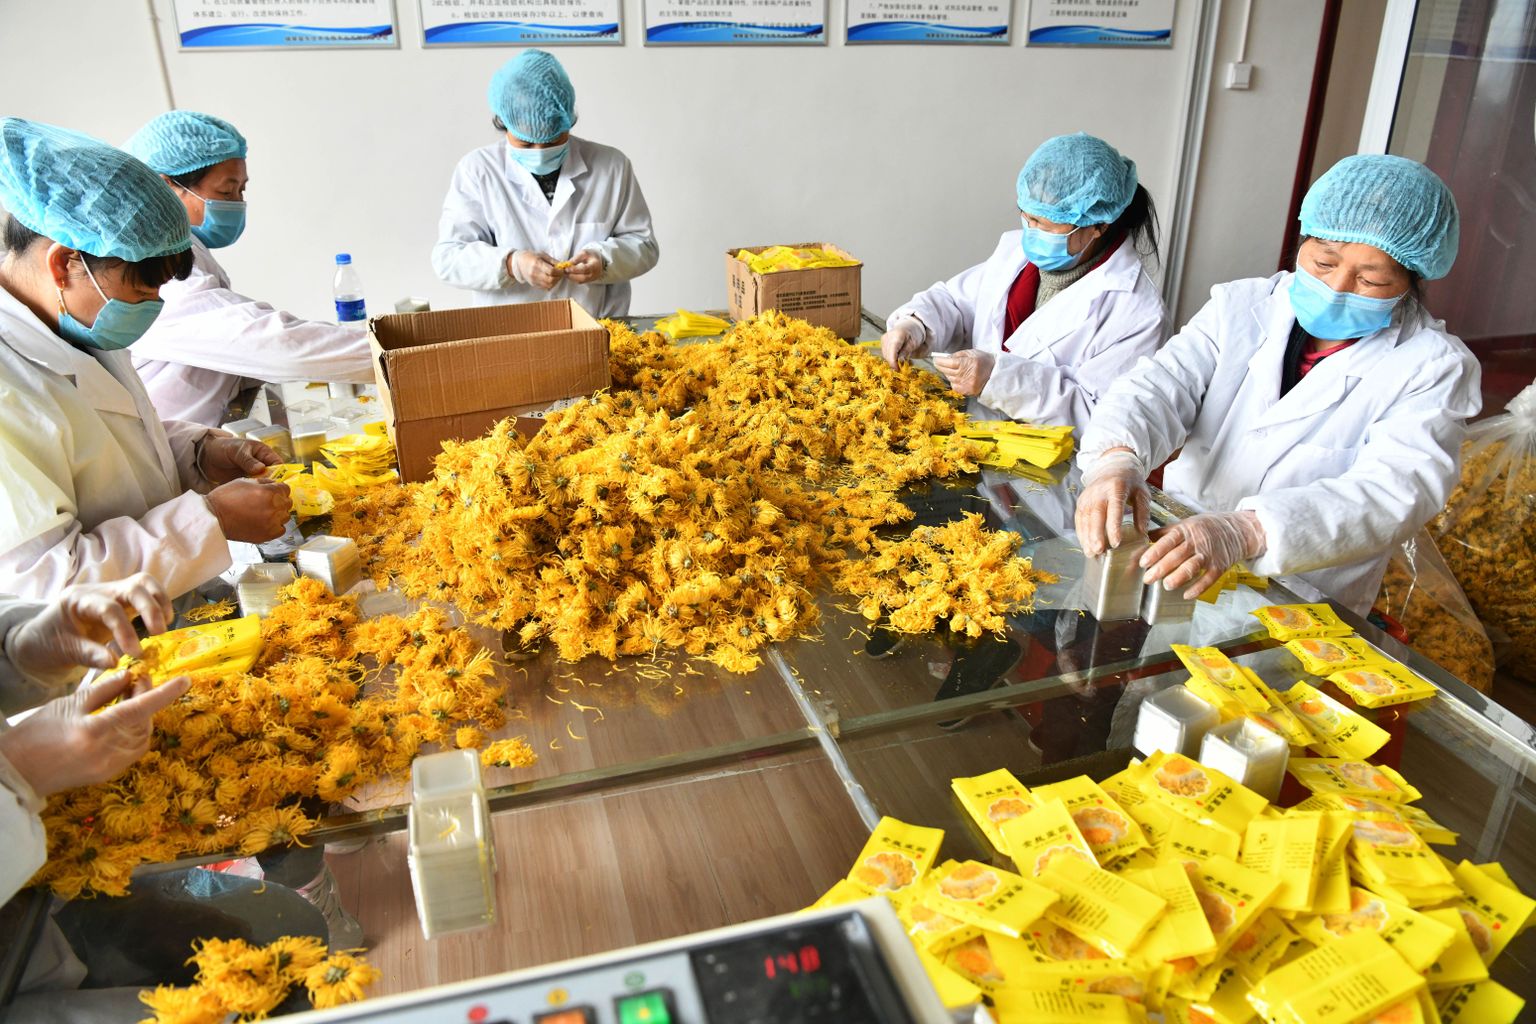 Õietolmu suhtes tundlikel inimestel võib allergiline reaktsioon tekkida kokkupuutel korvõieliste taimedega, näiteks krüsanteemid, saialilled, päevakübarad. Pildil krüsanteemitee pakendajad Dongzhuangi külas Hiina Guizhou provintsis 11. märtsil 2020.